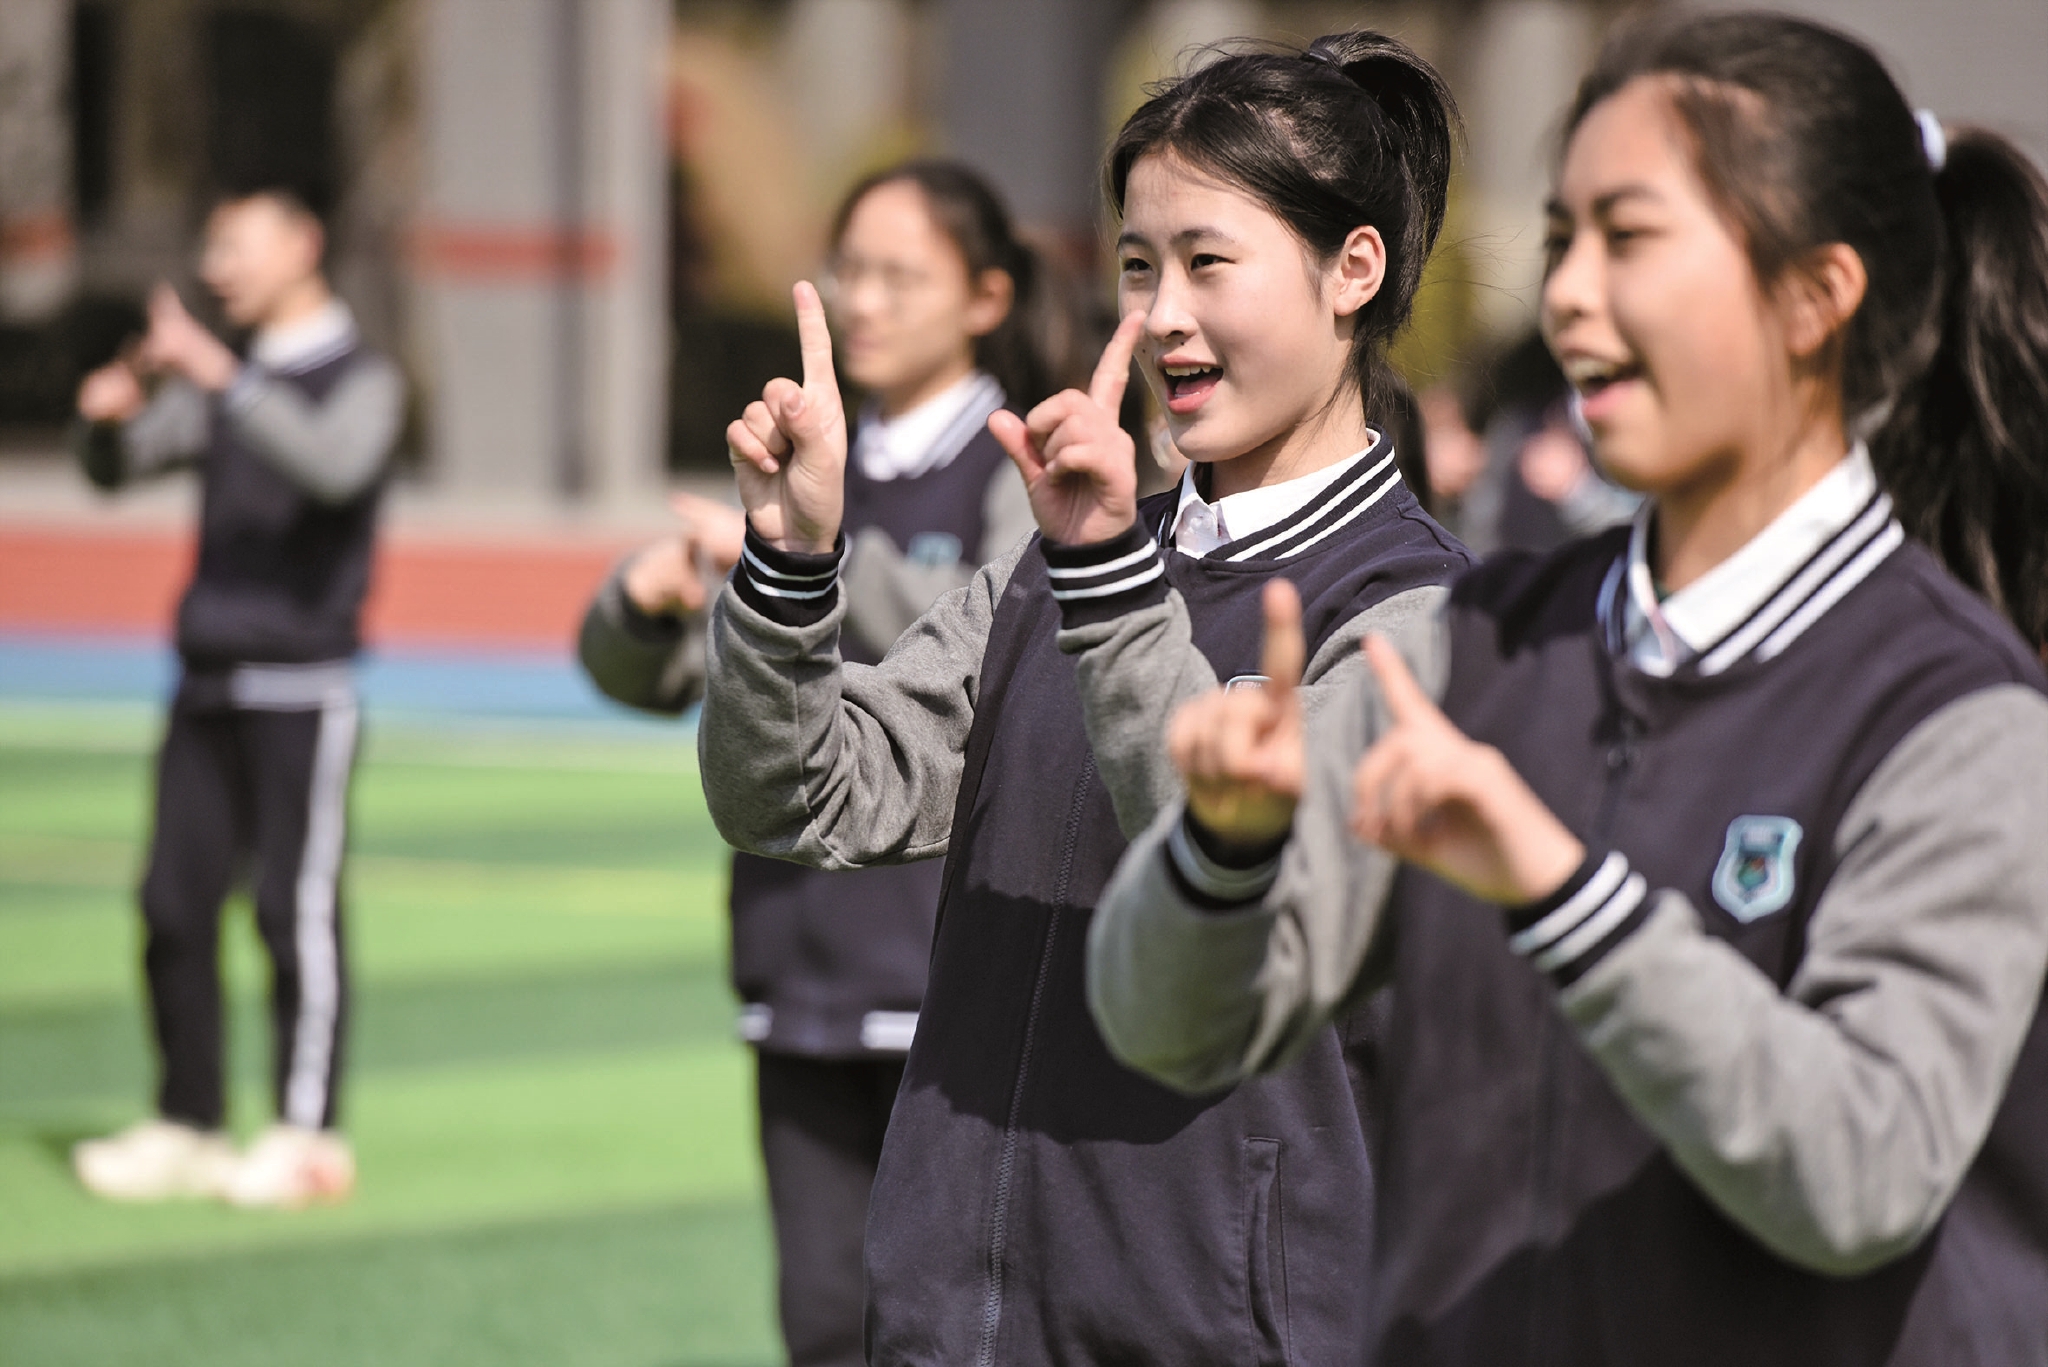 学生们利用午休时间,跟着欢快的音乐跳起了北京冬奥会手势舞《一起向